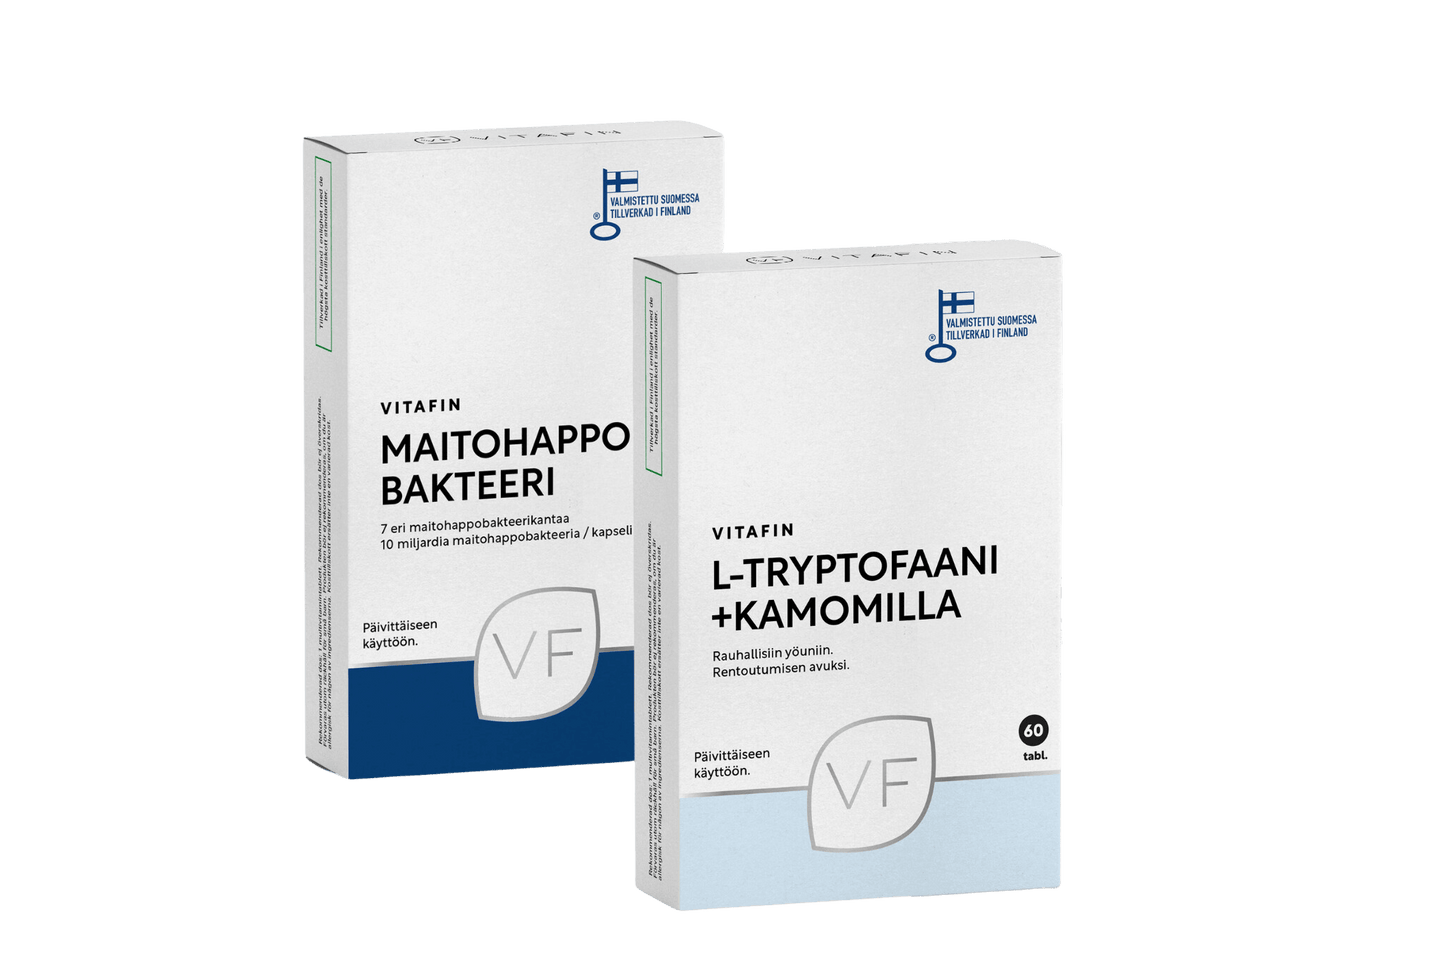 Unicombo - L-Tryptofaani + Kamomilla & Maitohappobakteeri - VitaFin Oy